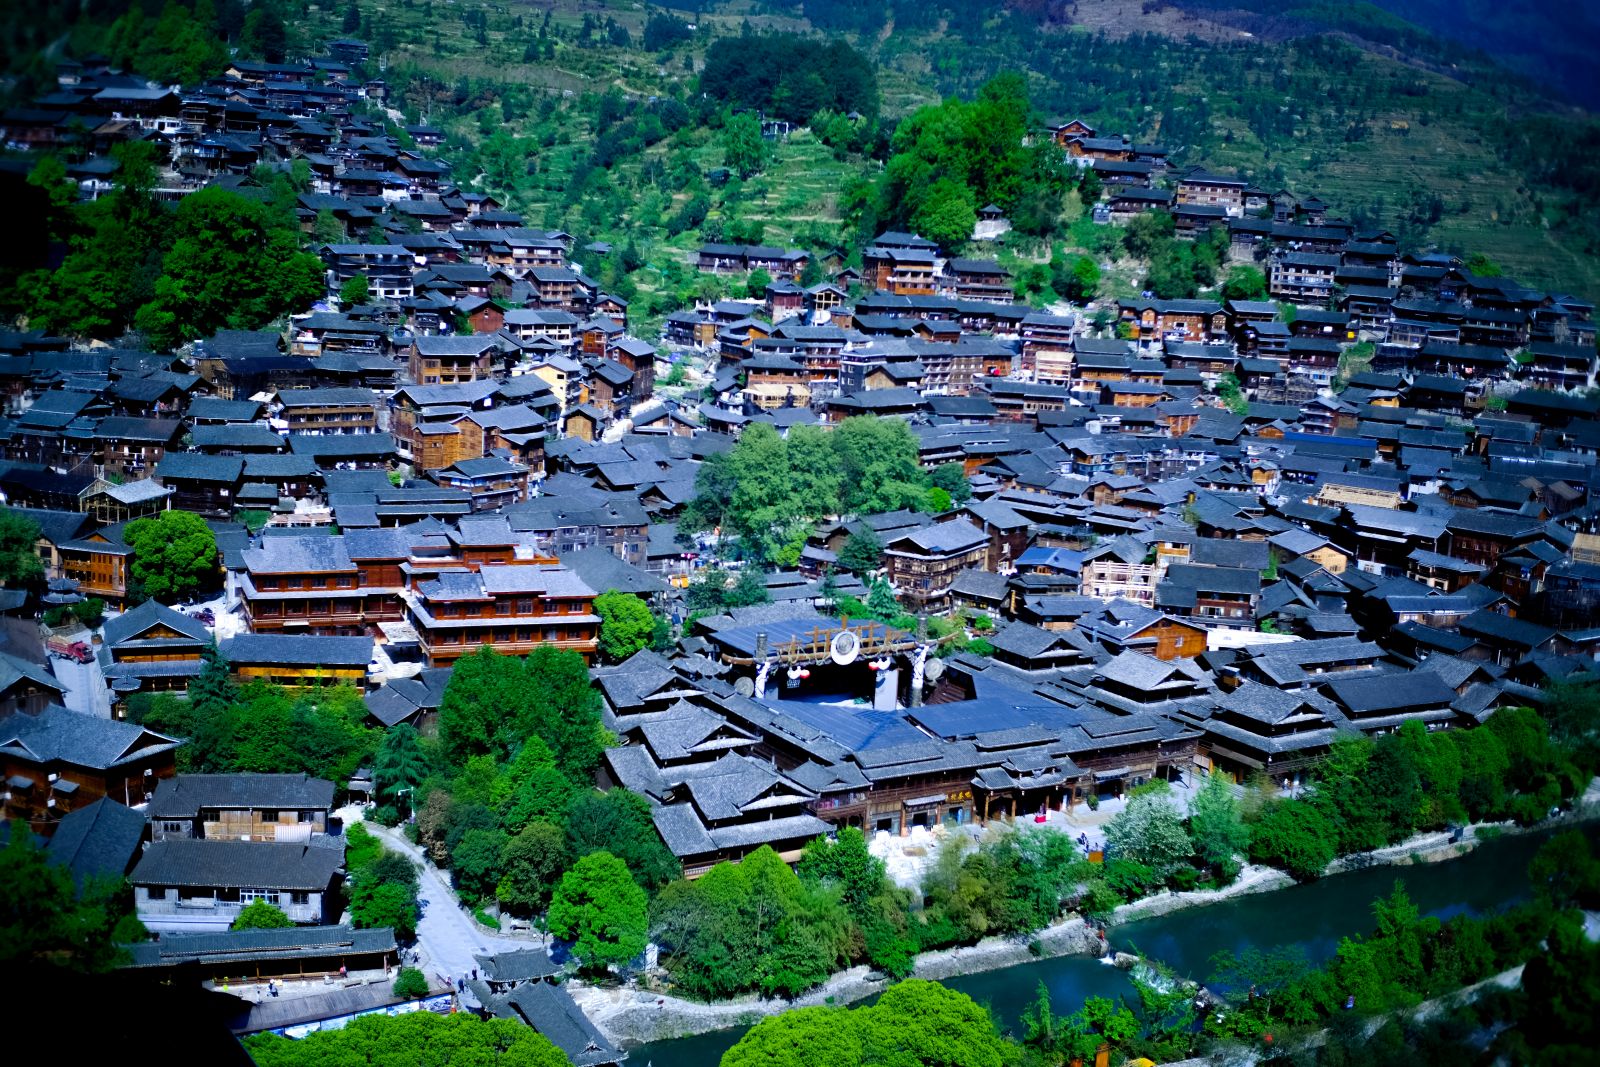 Qiandongnan in China’s Guizhou Province